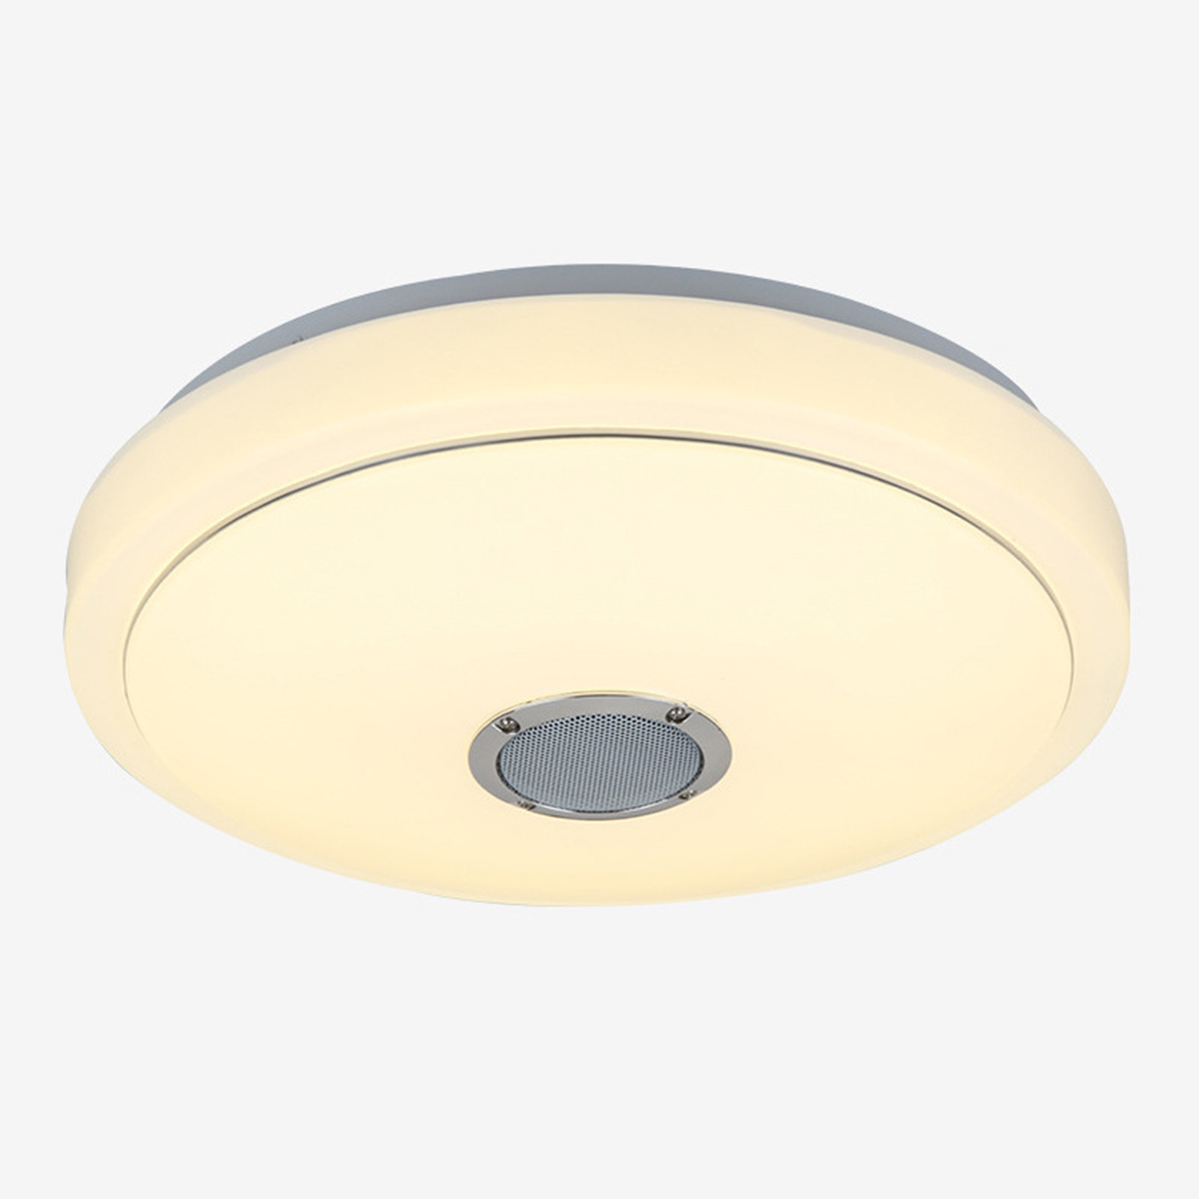 243660W-Smart-LED-Ceiling-Light-Lamp-RGB-bluetooth-APP-Music-Speaker-Dimmable-110-220V-1774553-10